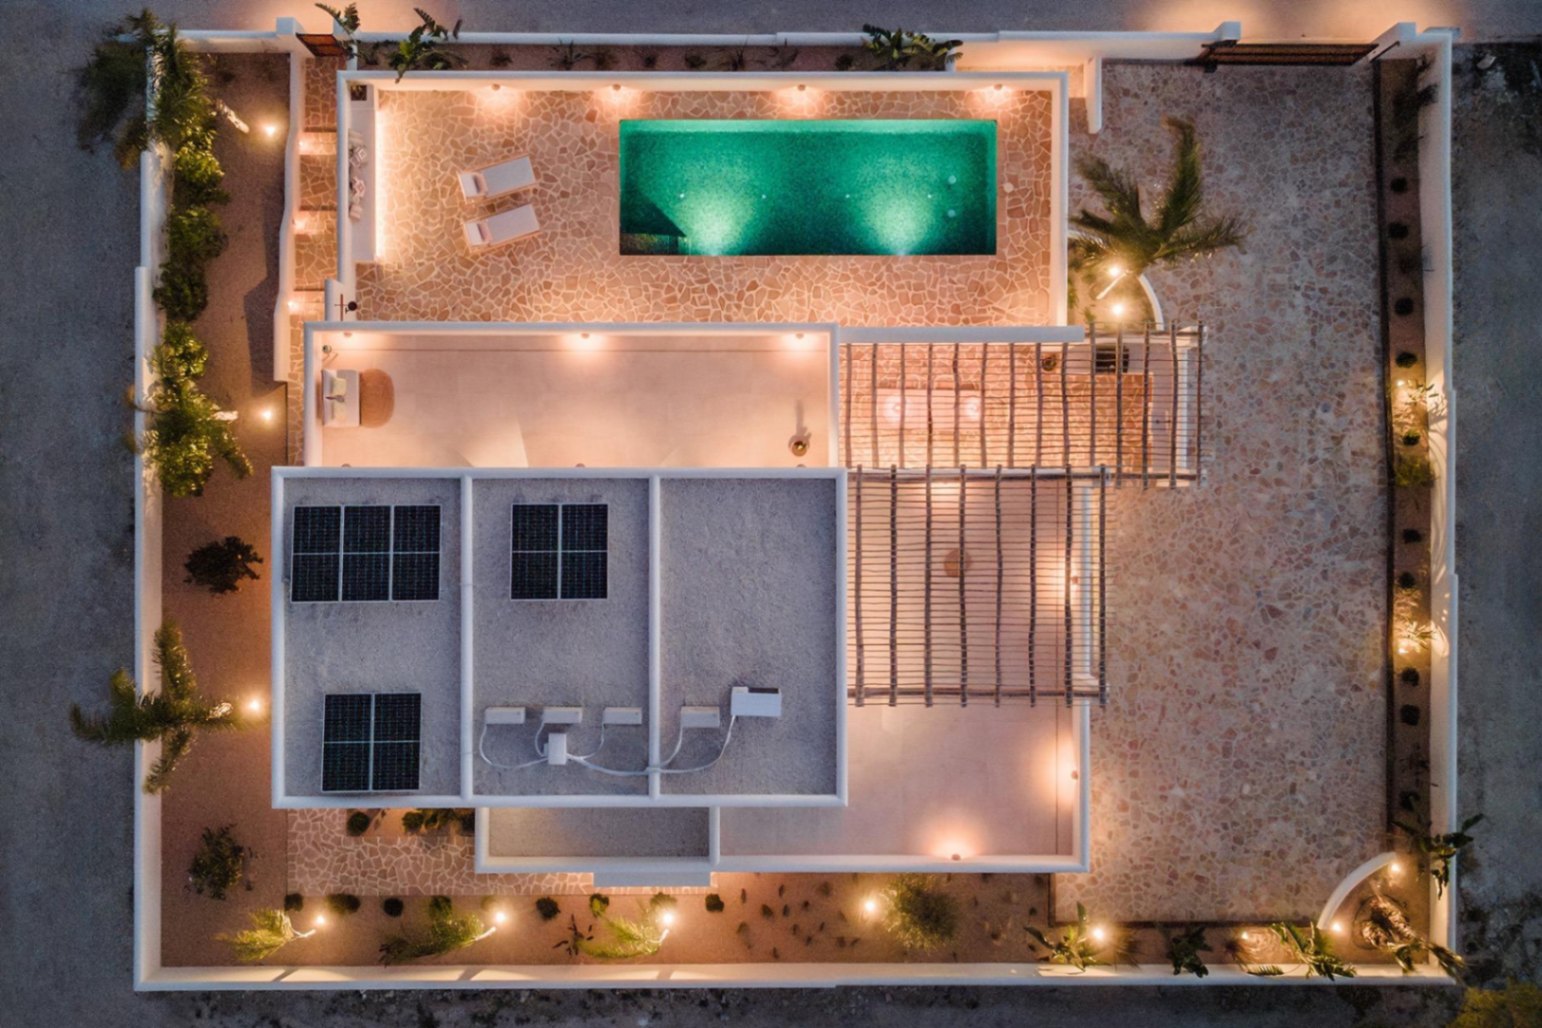 Neue schlüsselfertige Villa im Ibiza-Stil